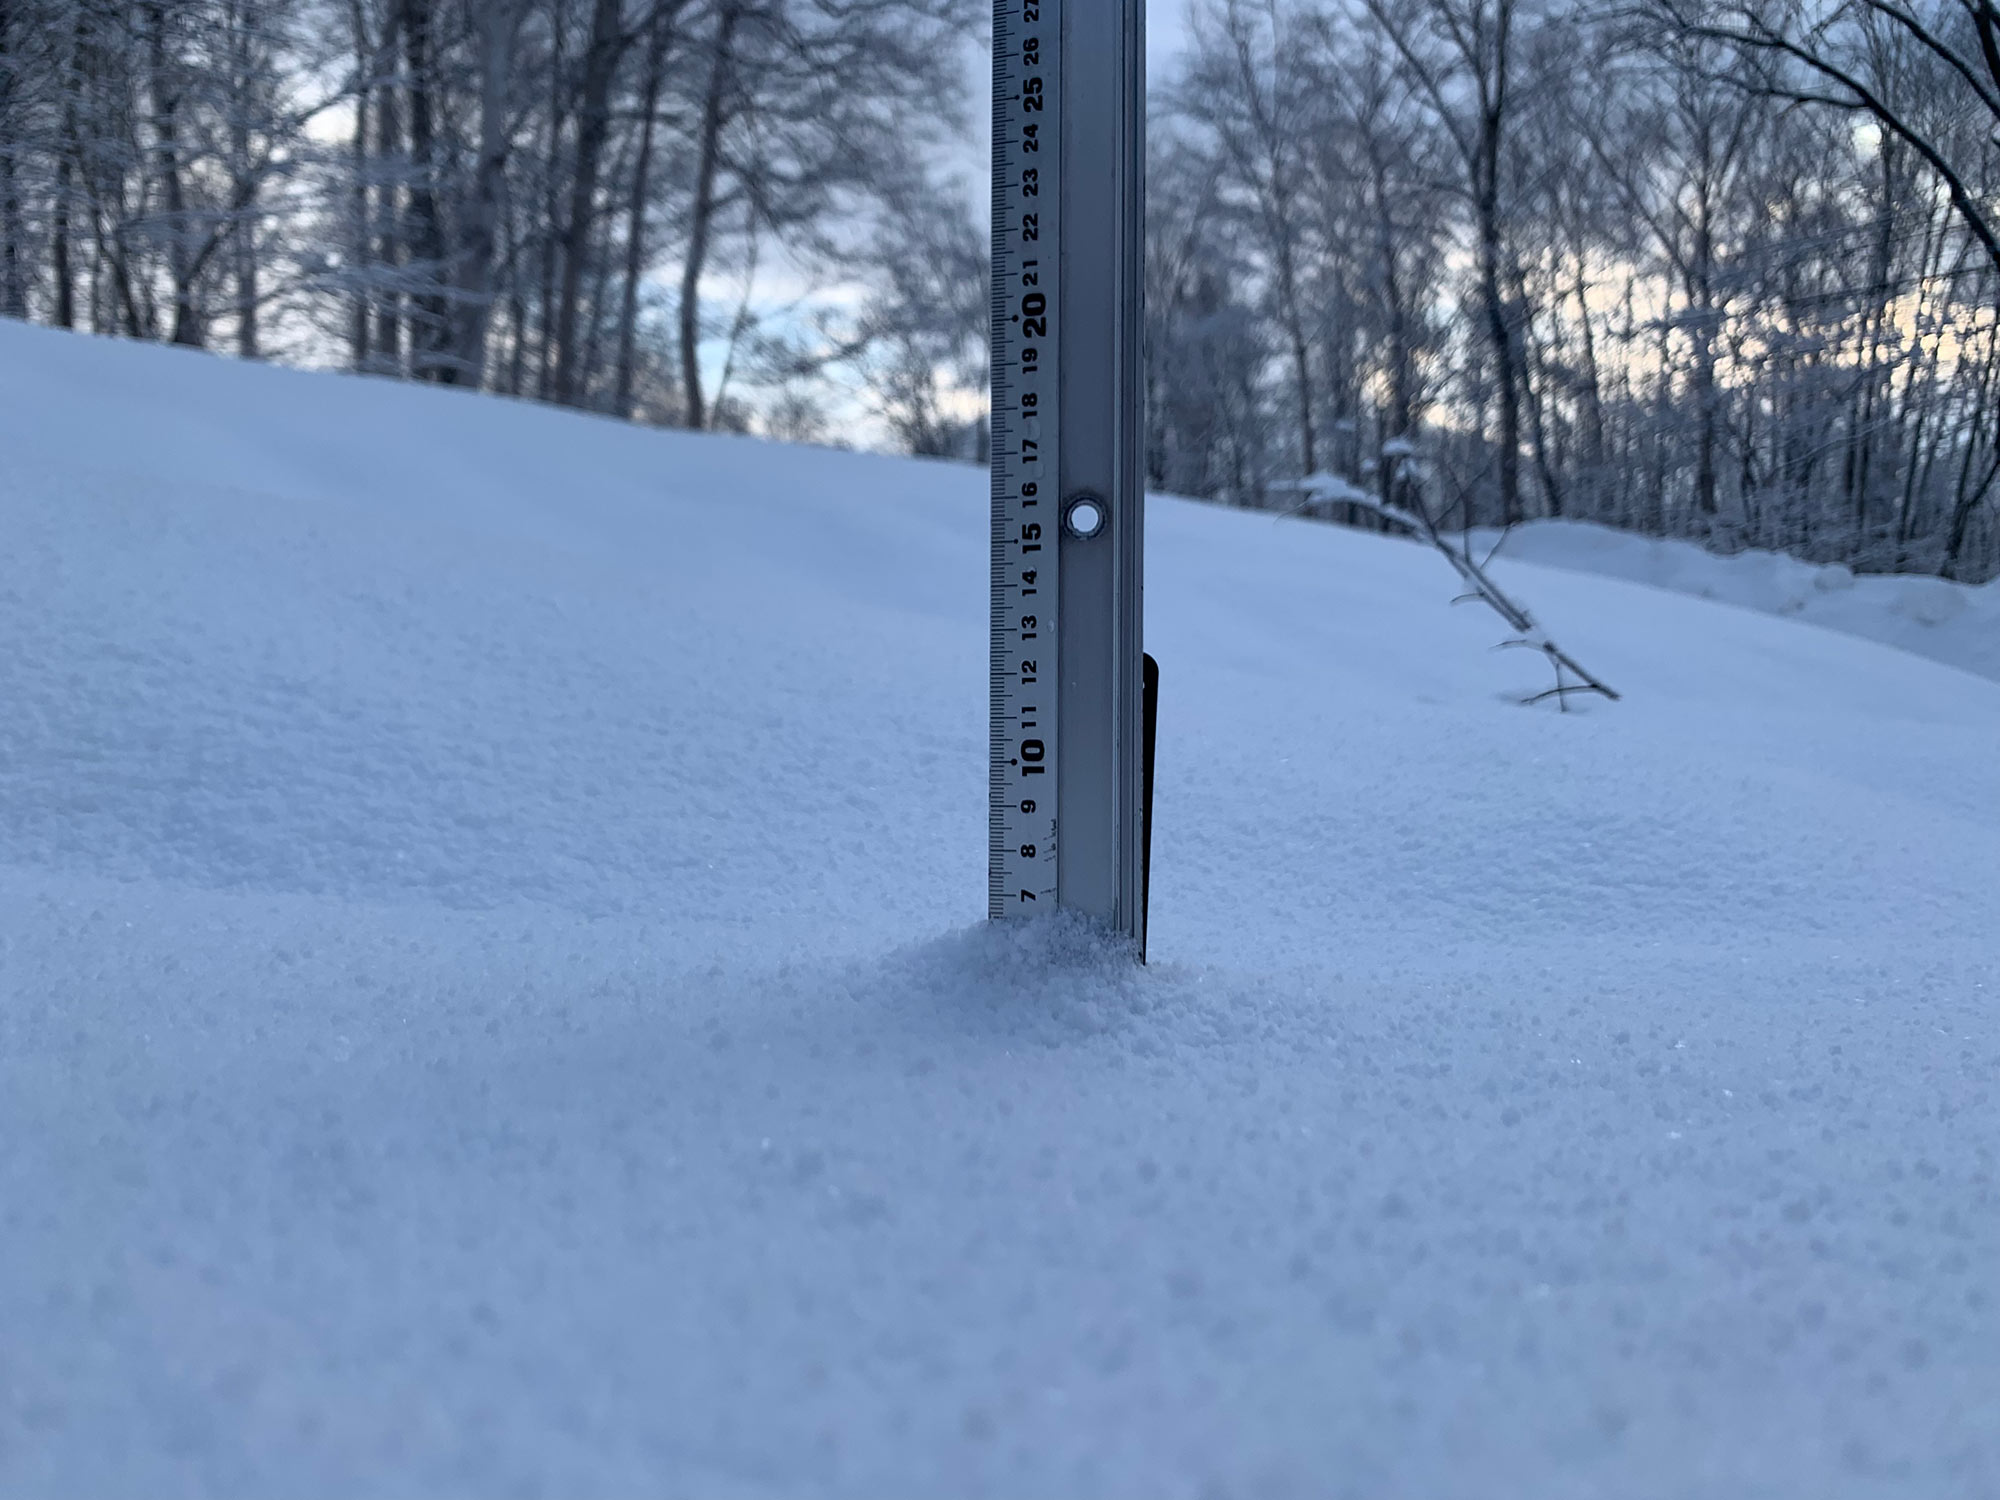 Niseko Snow Report, 2 March 2022